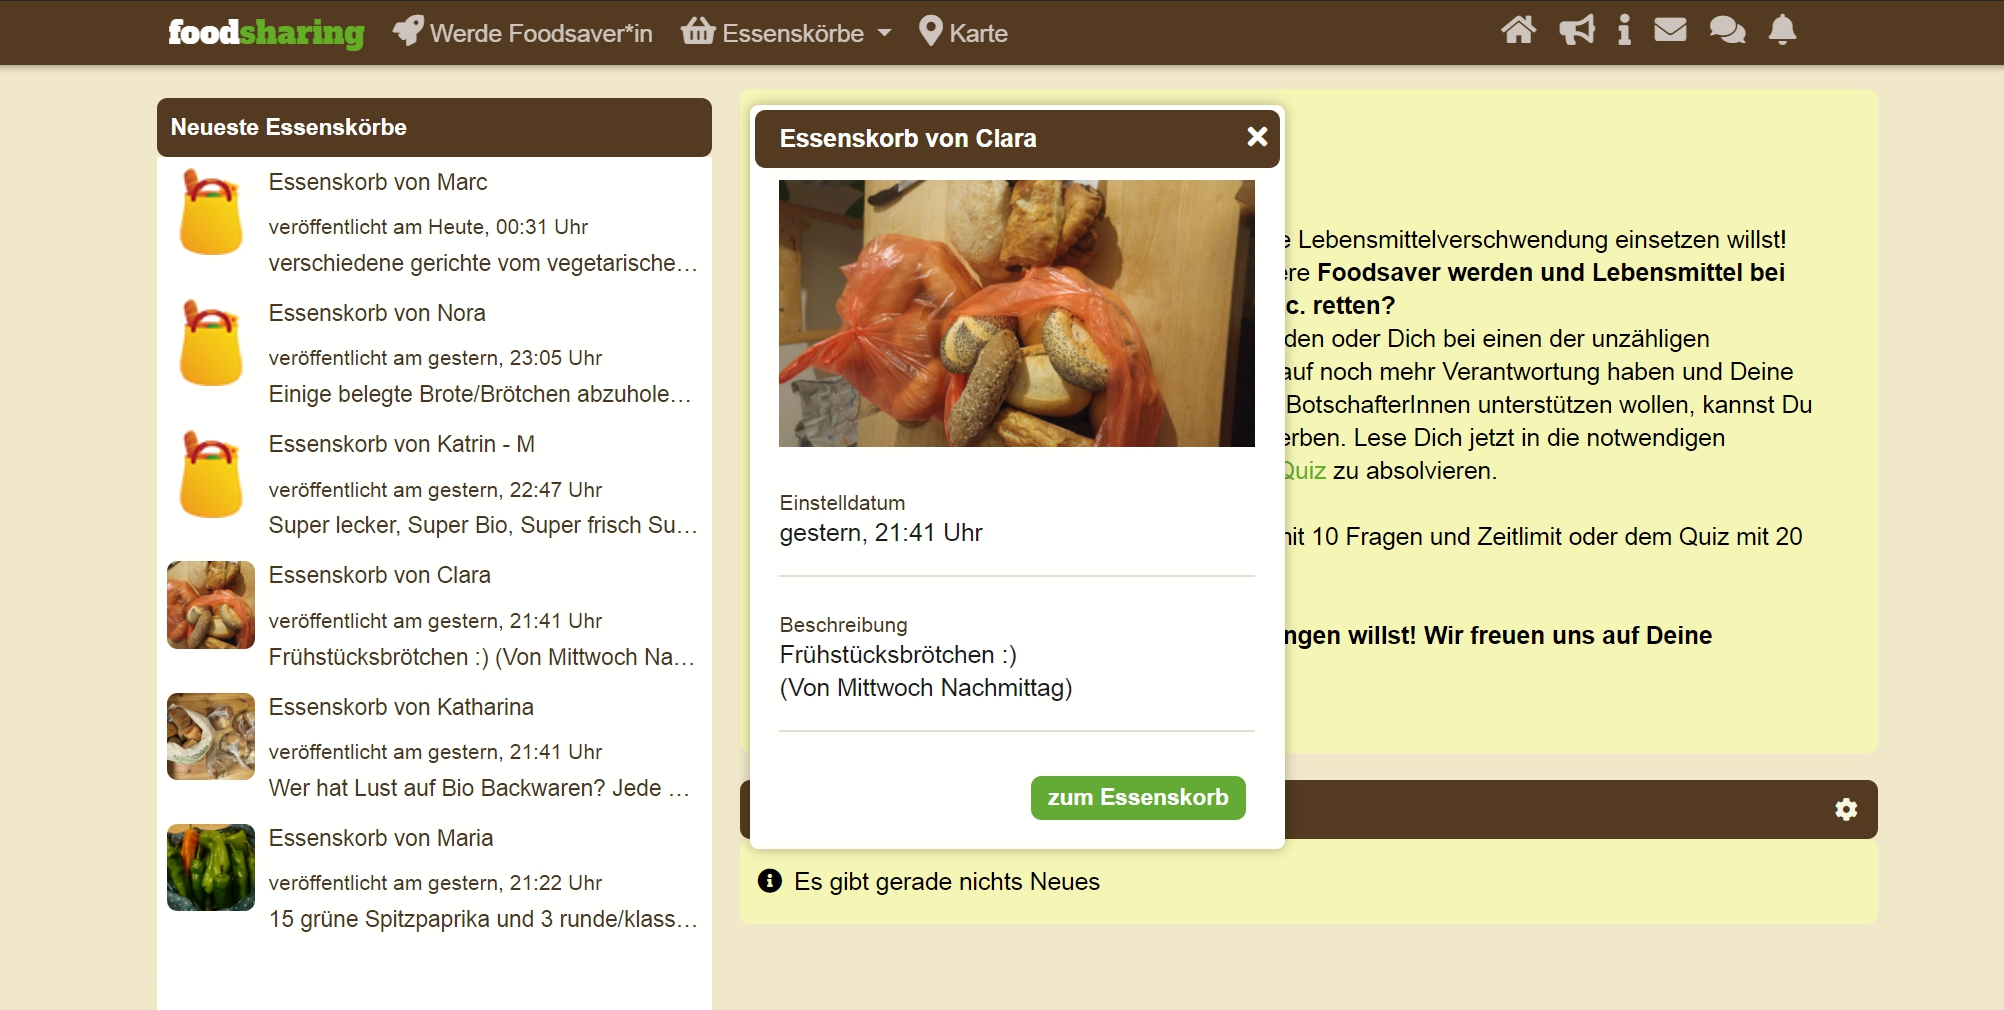 В готовых корзинах на сайте немецкого фудшеринга можно найти почти что угодно. Например, отдают шесть больших мешков грецких орехов и сто литров консервированного шпината